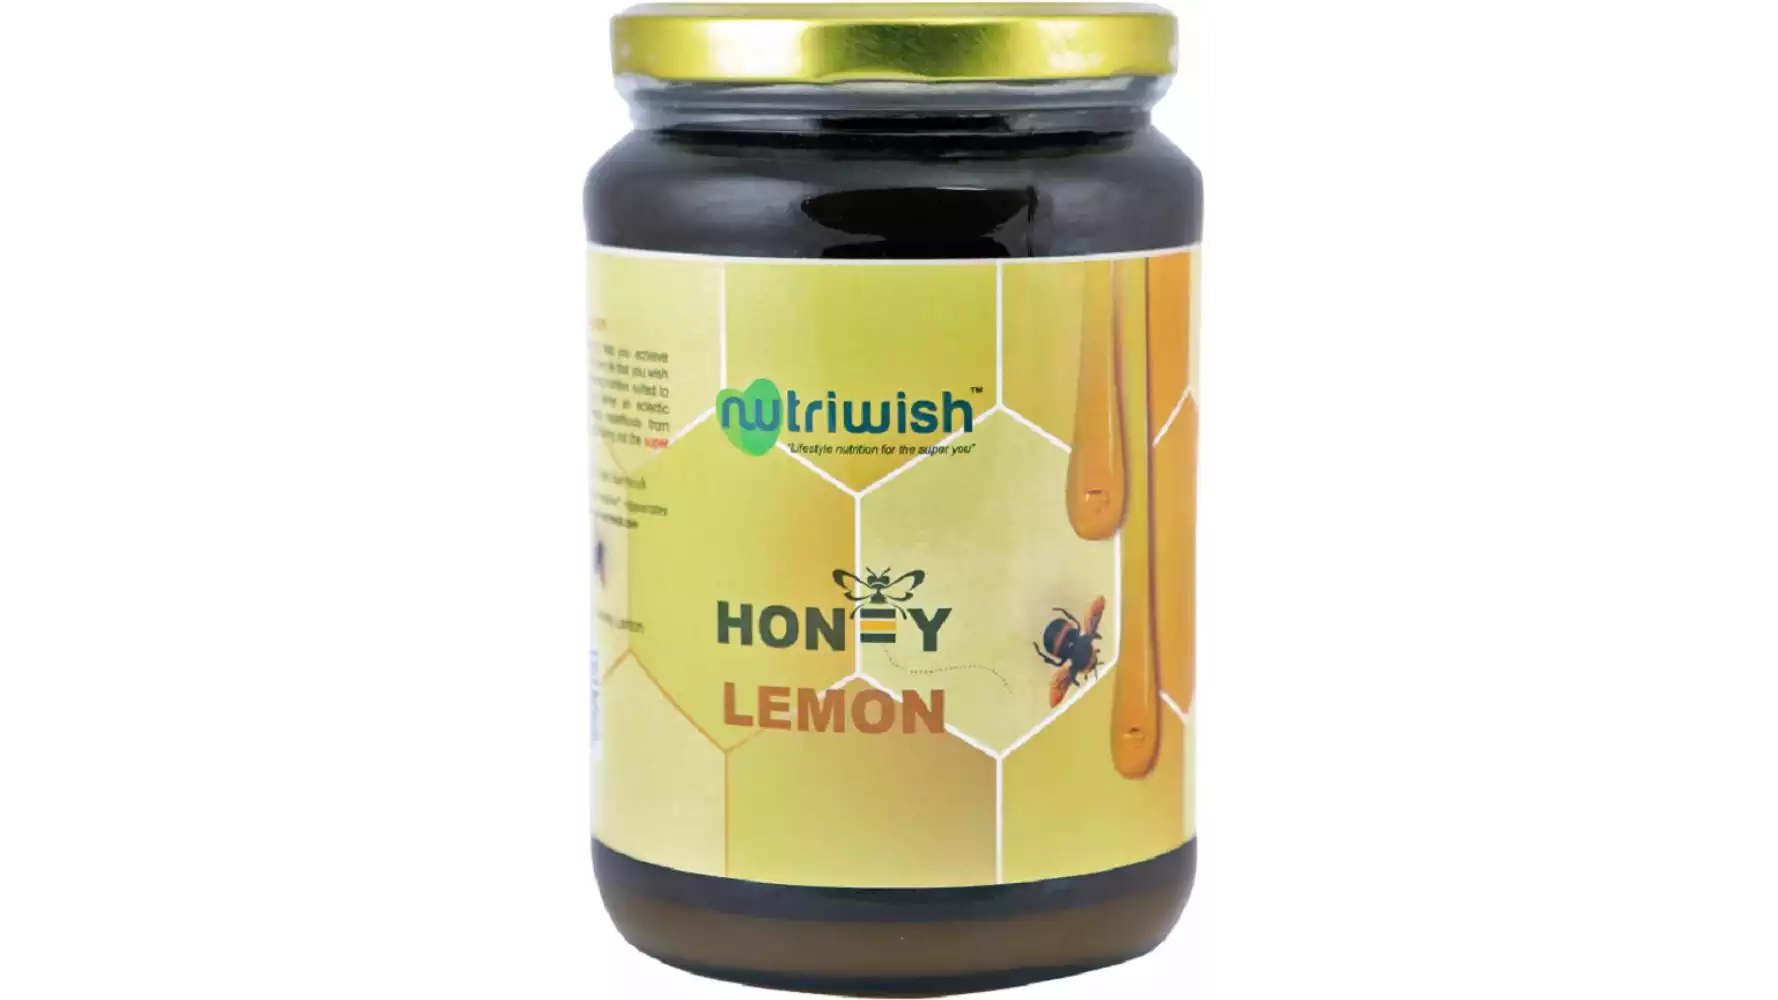 Nutriwish Lemon Honey (1kg)